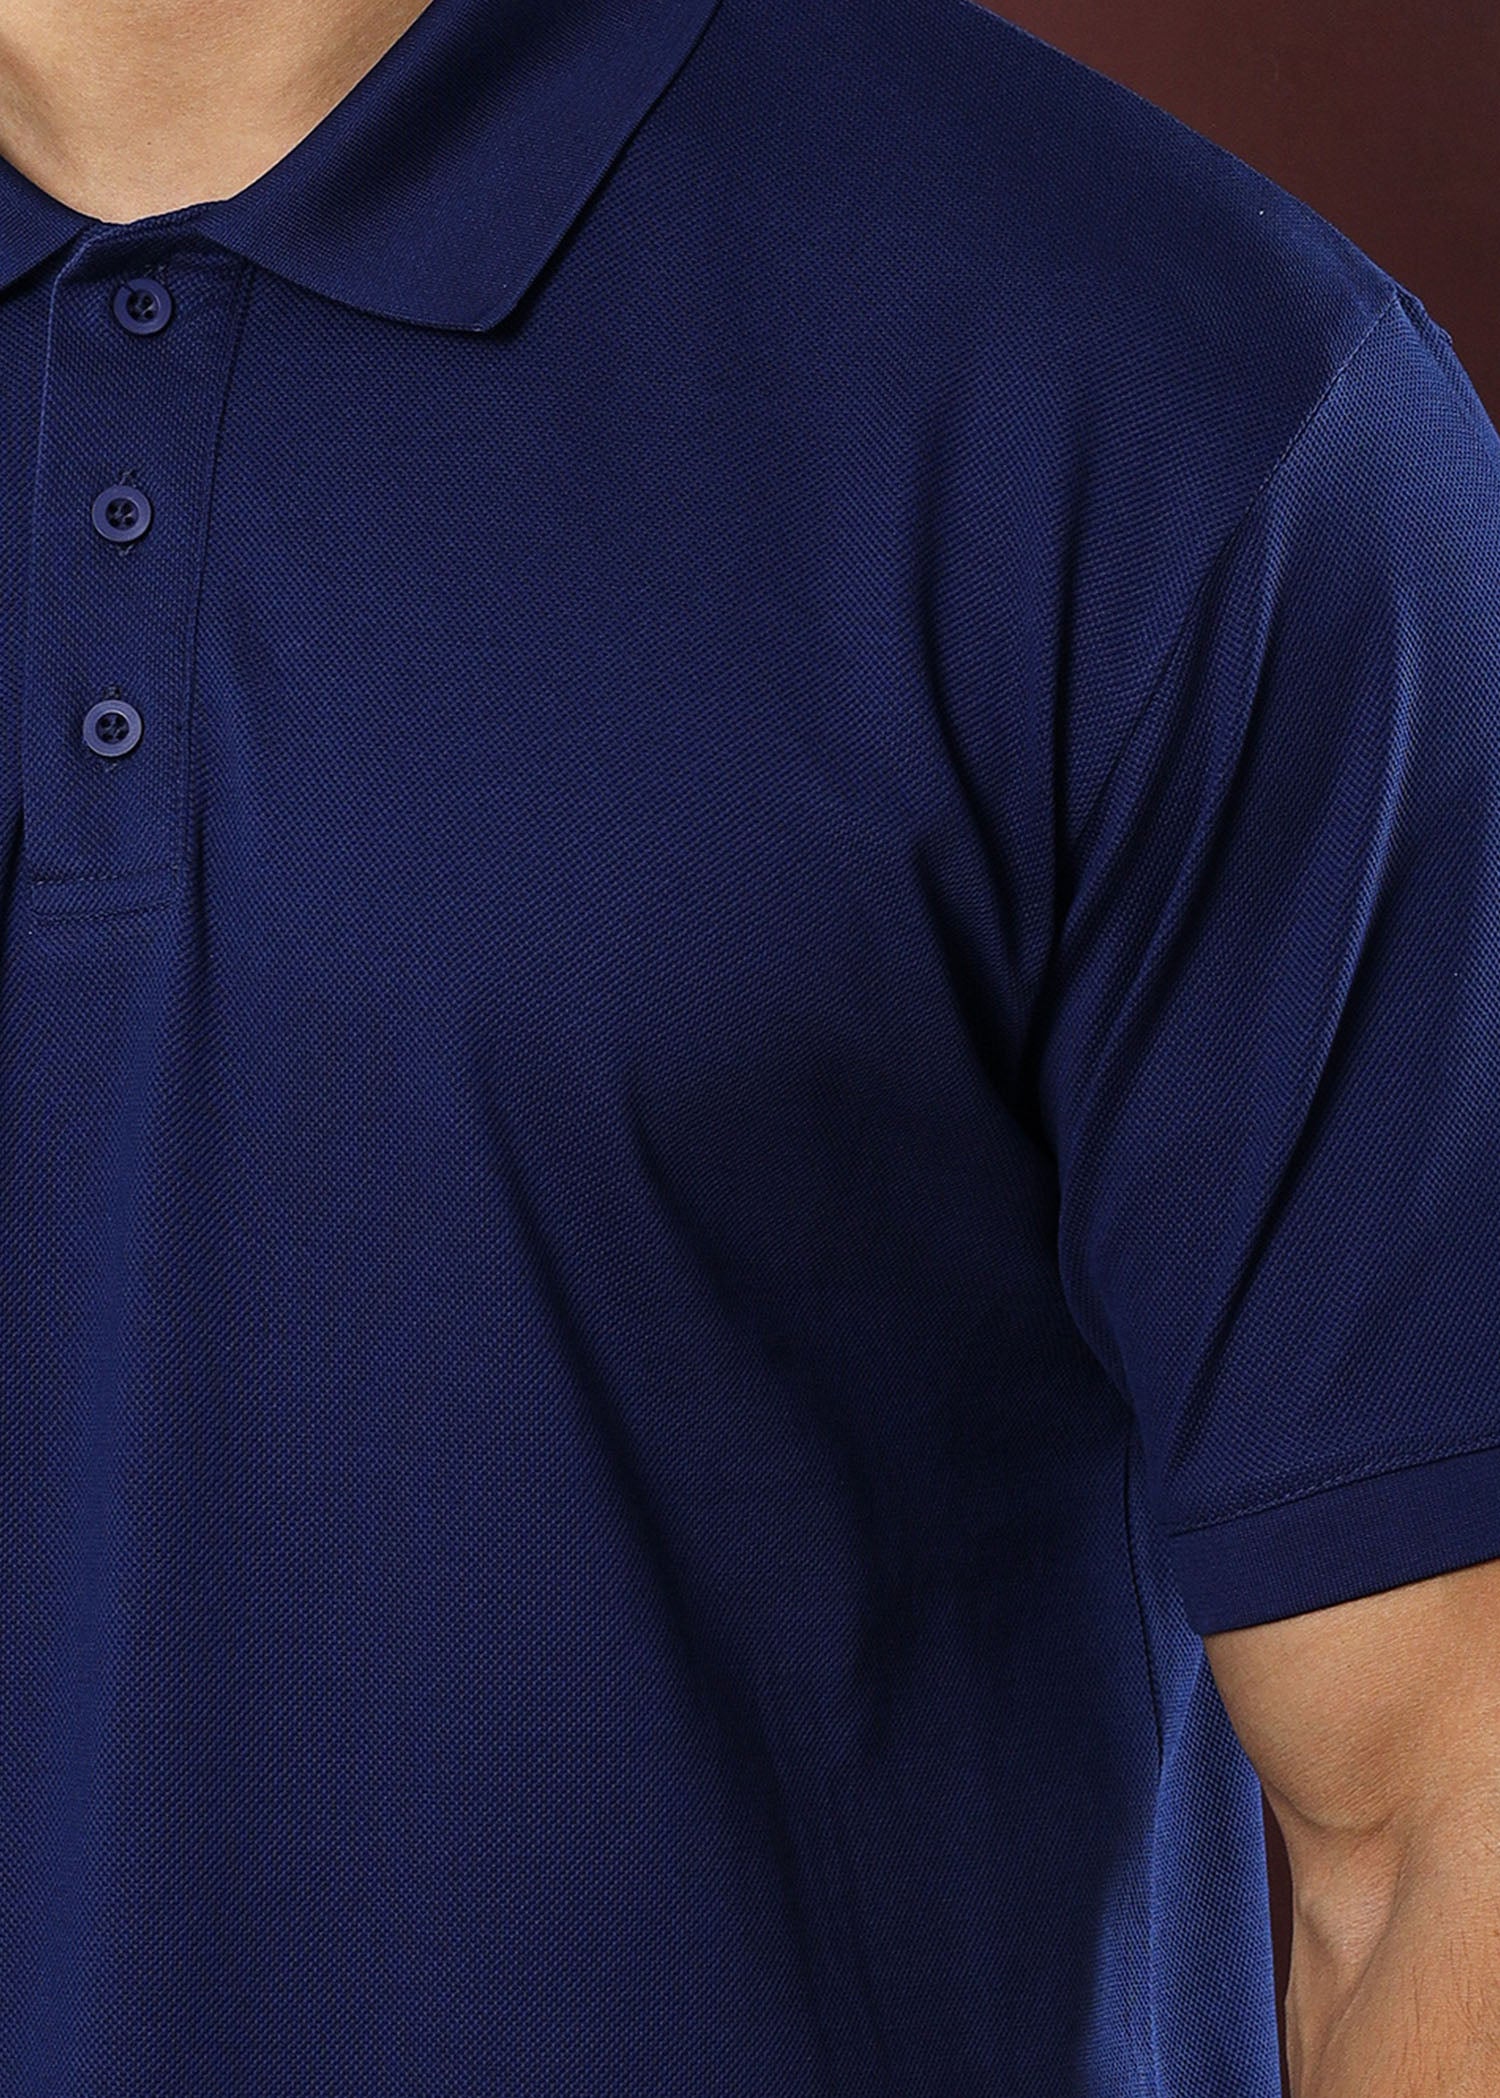 Navy Blue Polo T-Shirt (Regular Fit)